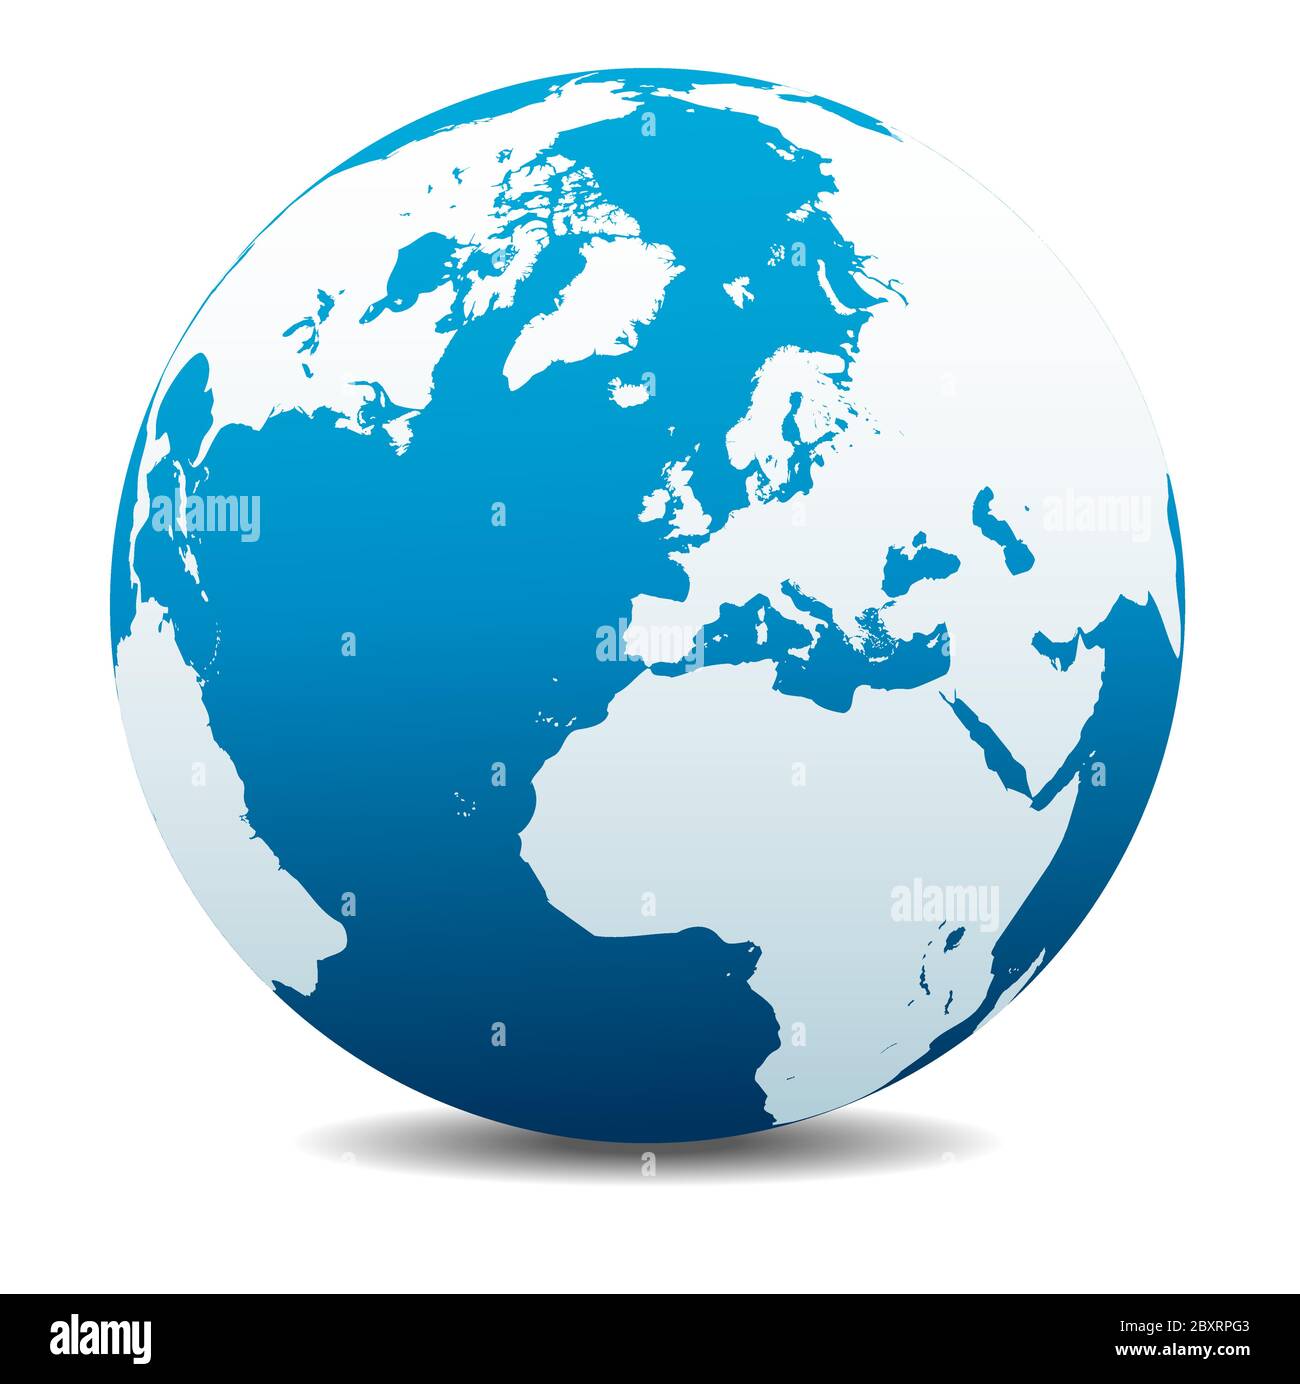 Europe, Russie et Afrique, icône carte vectorielle du globe terrestre, Terre. Tous les éléments se trouvent sur des calques individuels dans le fichier vectoriel. Illustration de Vecteur